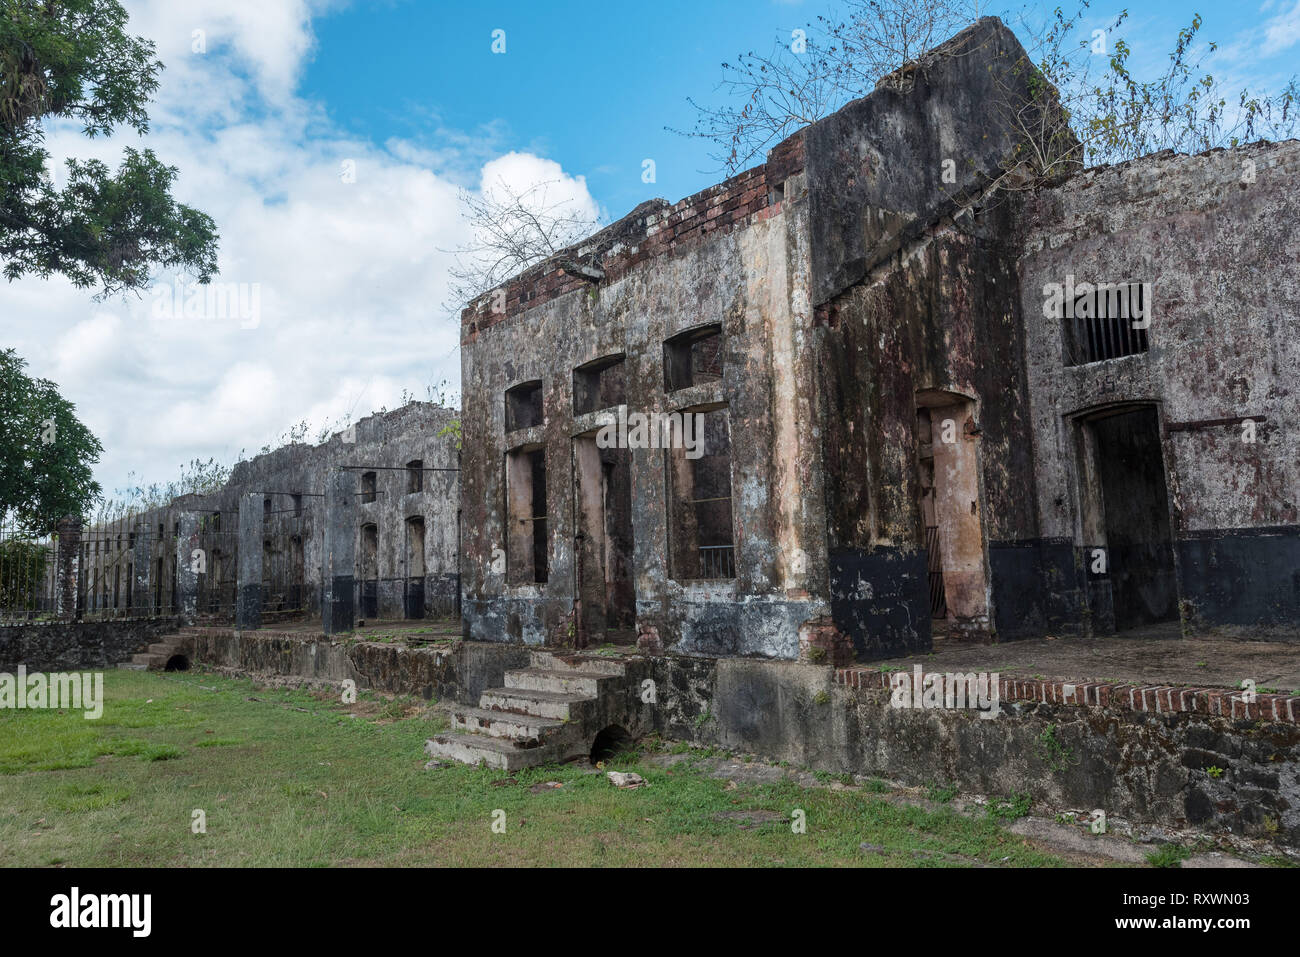 Prigione di St-Laurent du Maroni, in Guiana francese. Le cellule del confino solitario ala Foto Stock